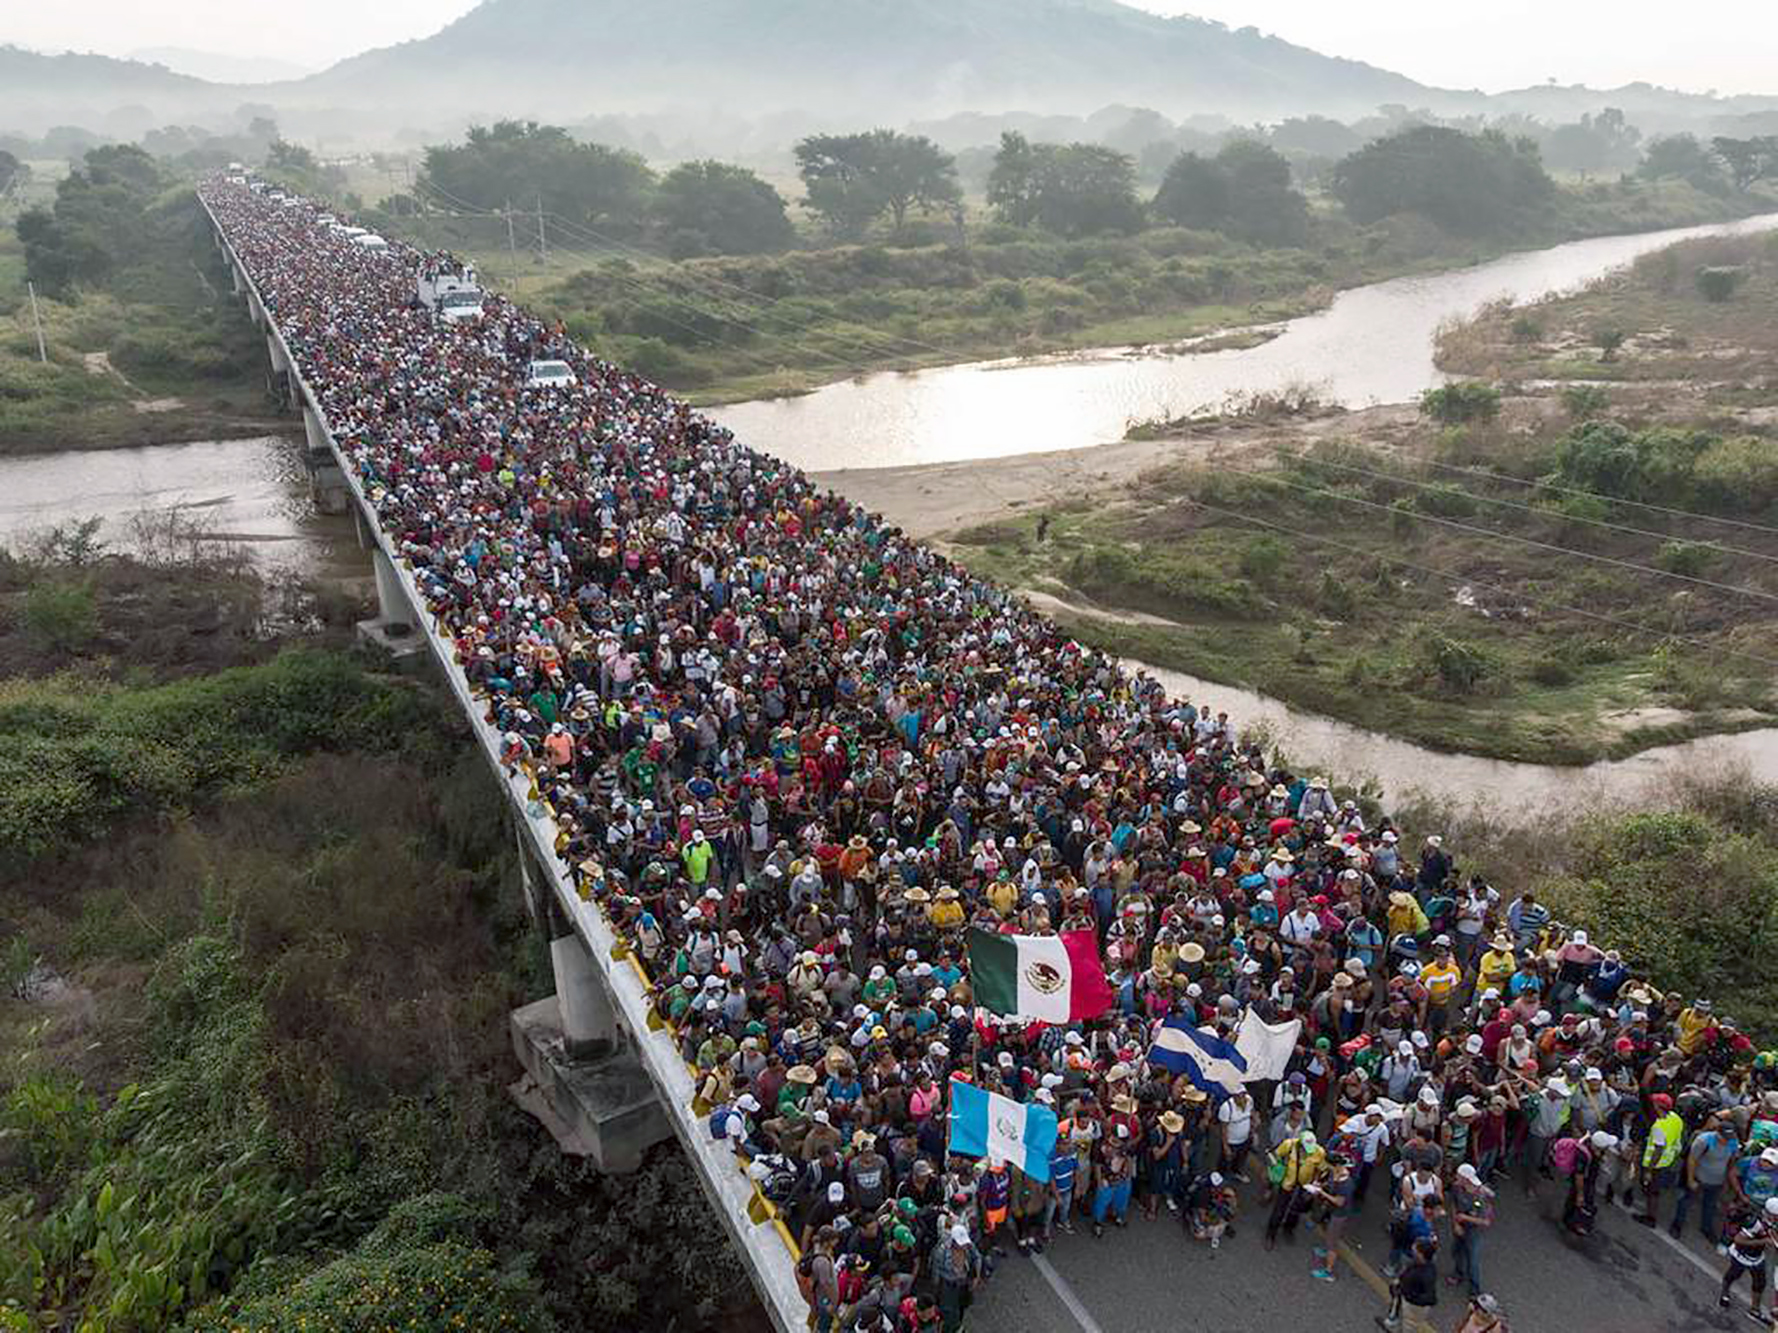 Miembros de la caravana migrante, integrada en su mayoría por hondureños, llegaron el 27 de octubre de 2018 al central estado de Puebla, ubicado a solo 120 kilómetros de la Ciudad de México.